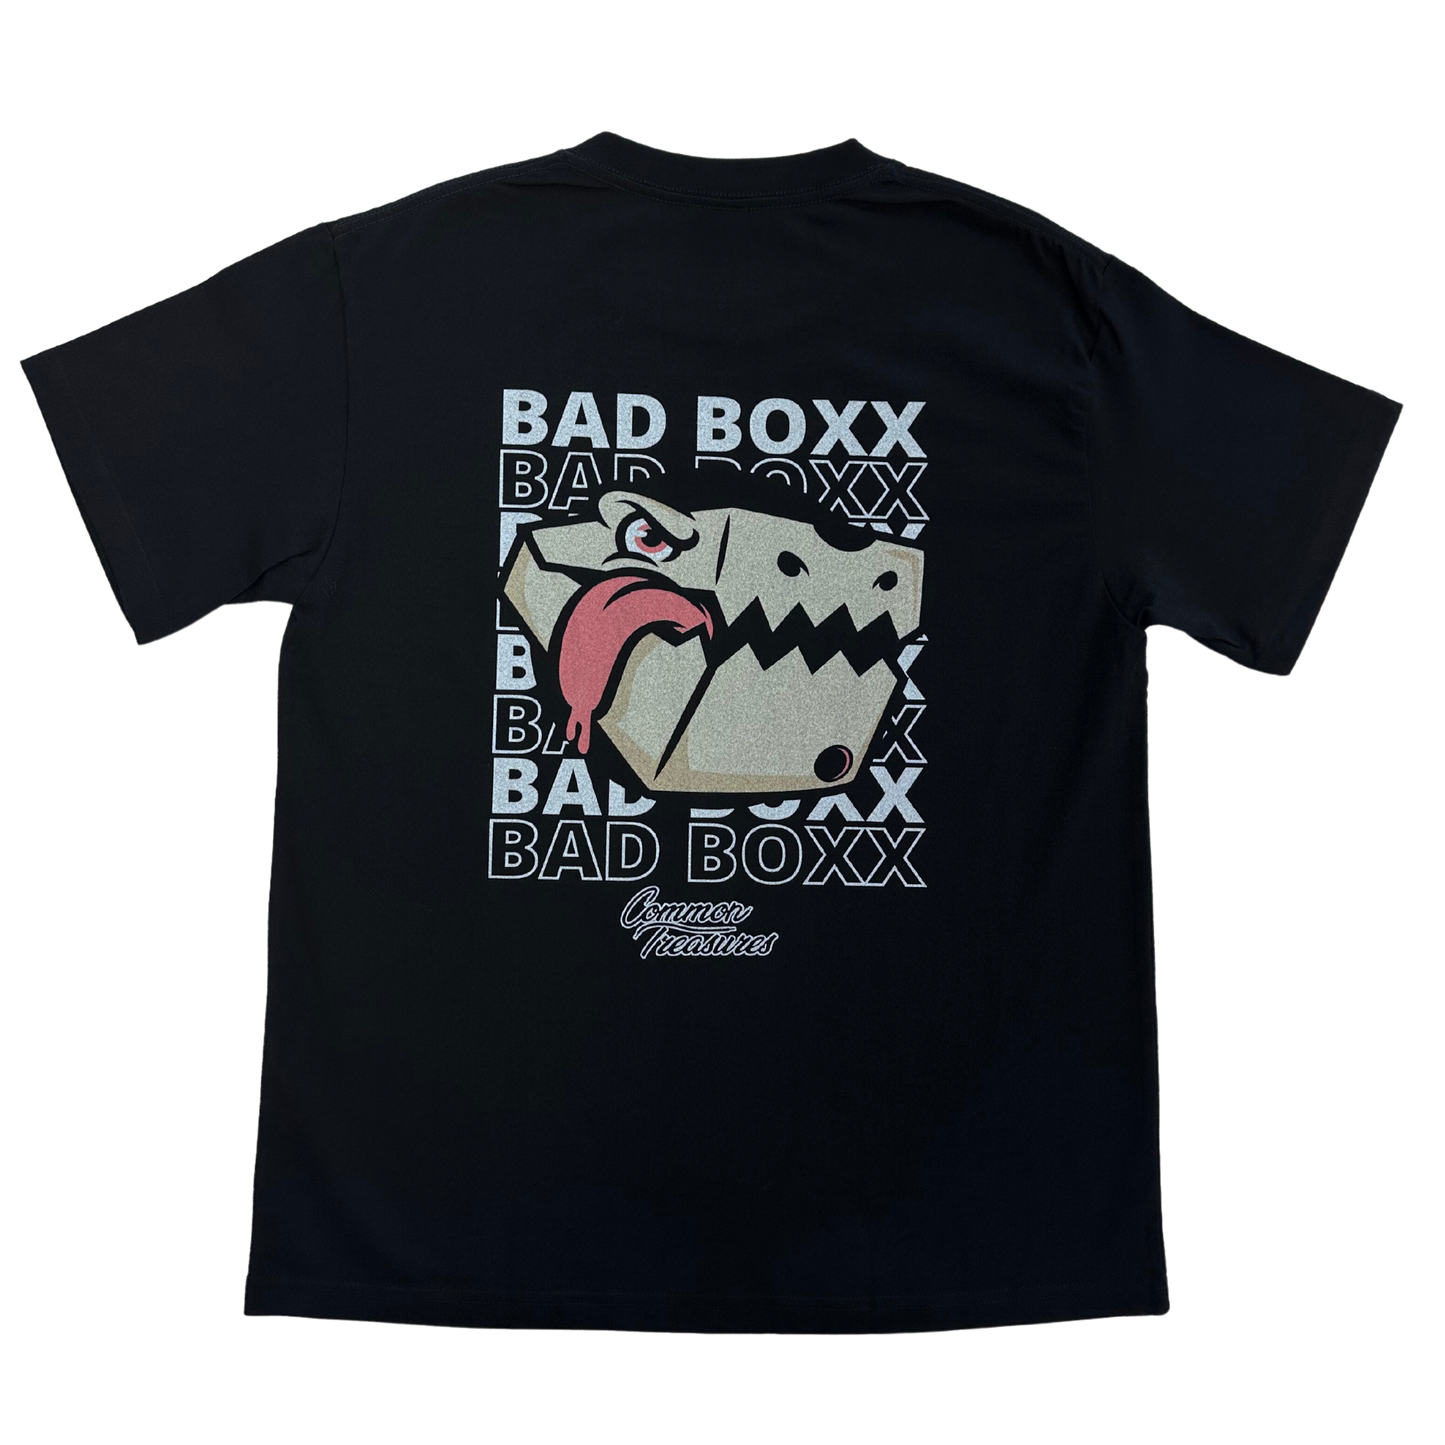 Bad Boxx Oversized Tee - Black